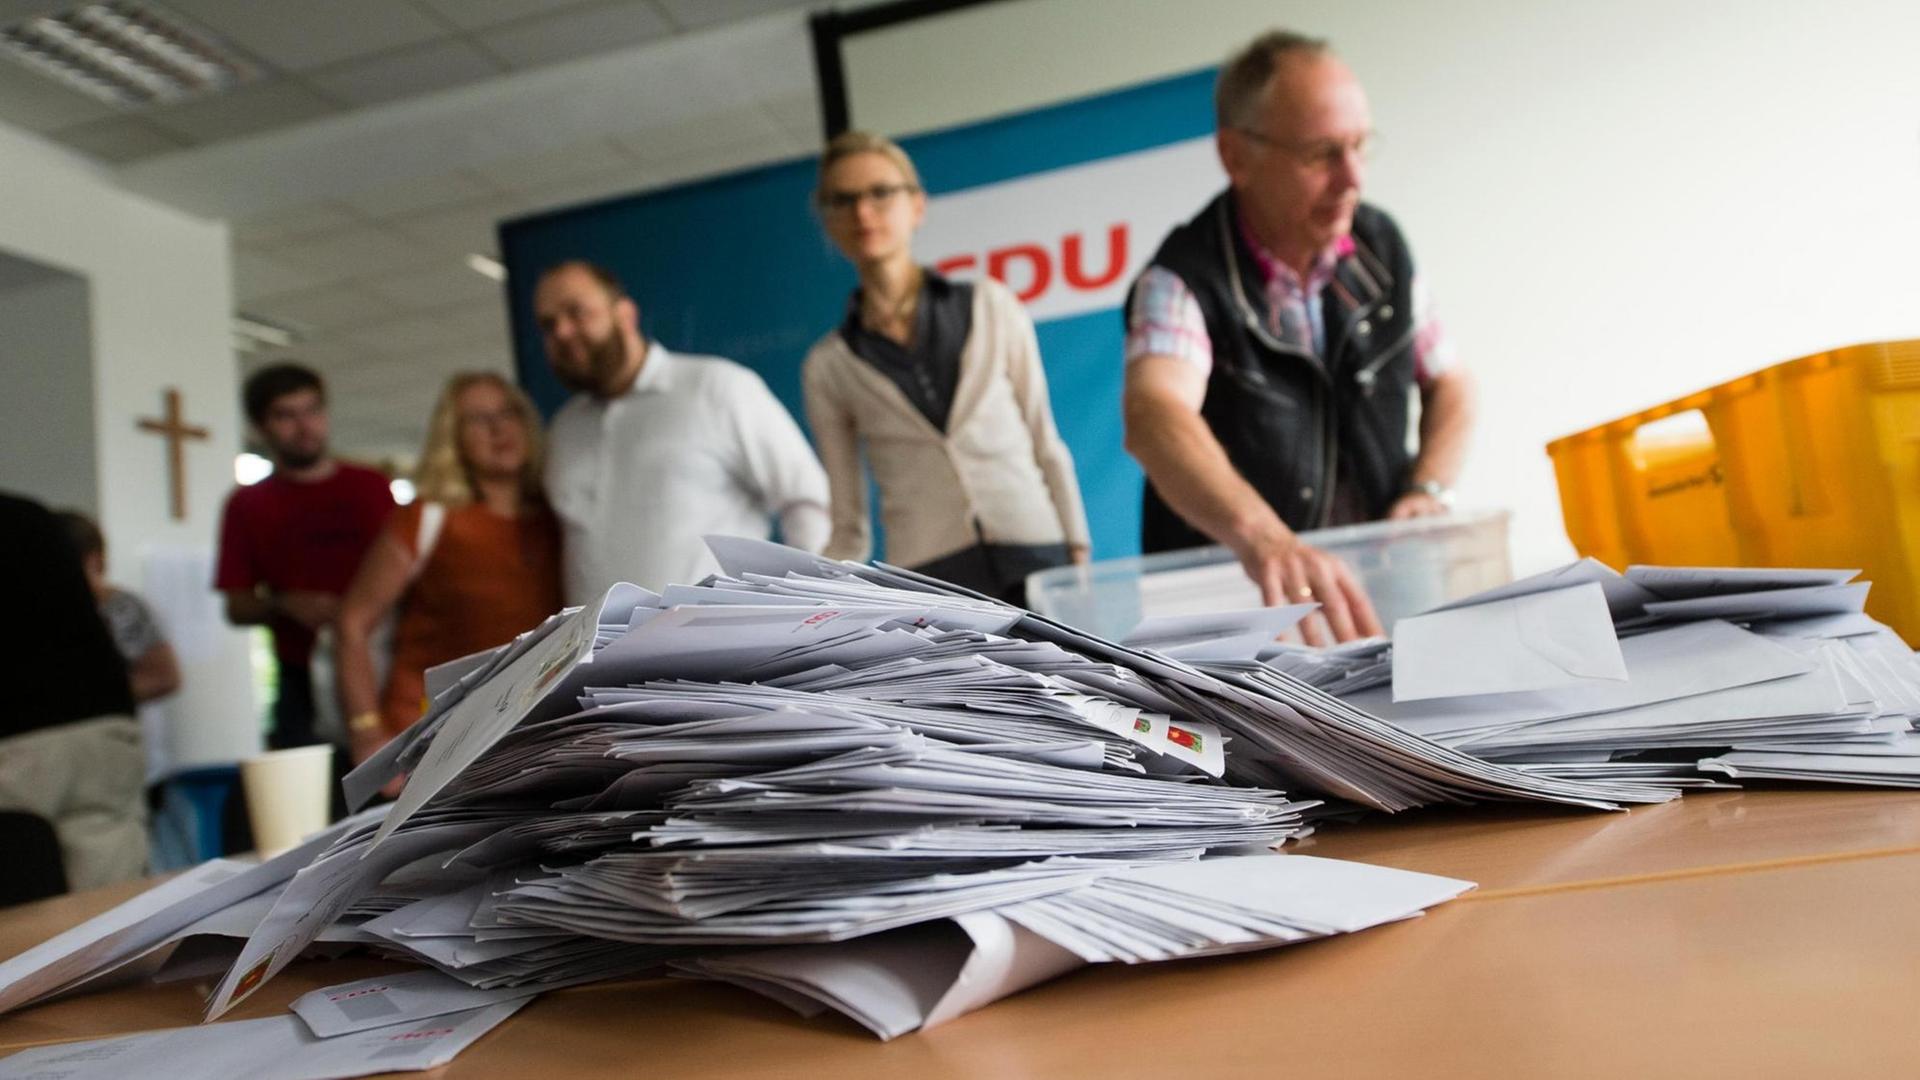 Die Stimmkarten der Mitgliederbefragung des CDU-Landesverband Berlin zur "Ehe für Alle" liegen am 24.07.2015 auf einem Tisch bereit zur Auszählung durch ehrenamtliche Mitarbeiter in der Zentrale des CDU Landesverband in Berlin.